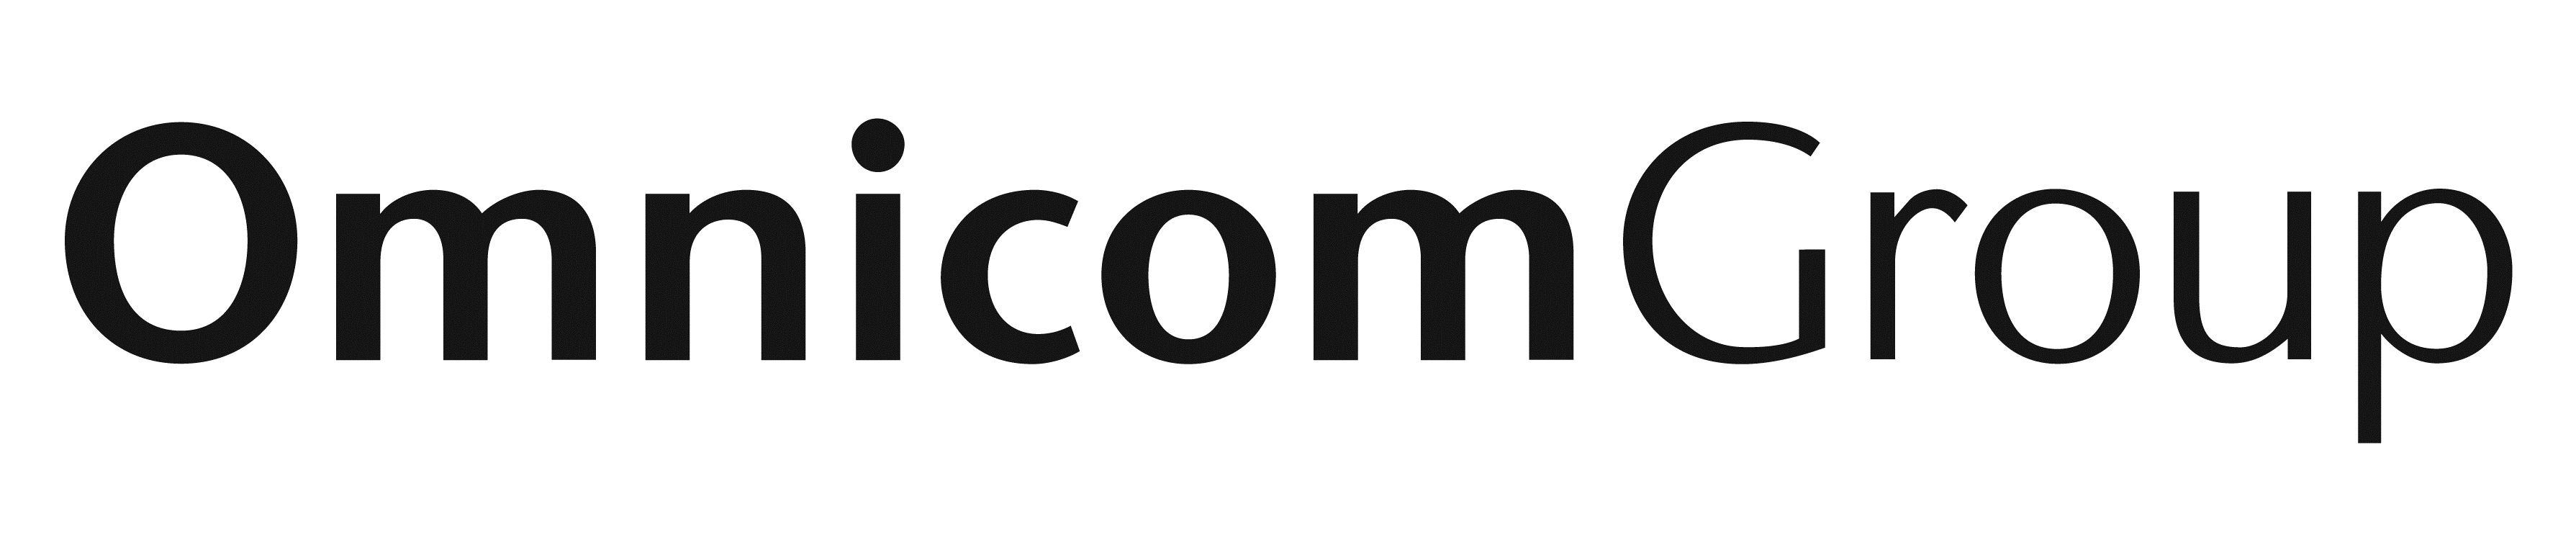 Omnicom Group Official Logo - Omnicom Group Logo.png